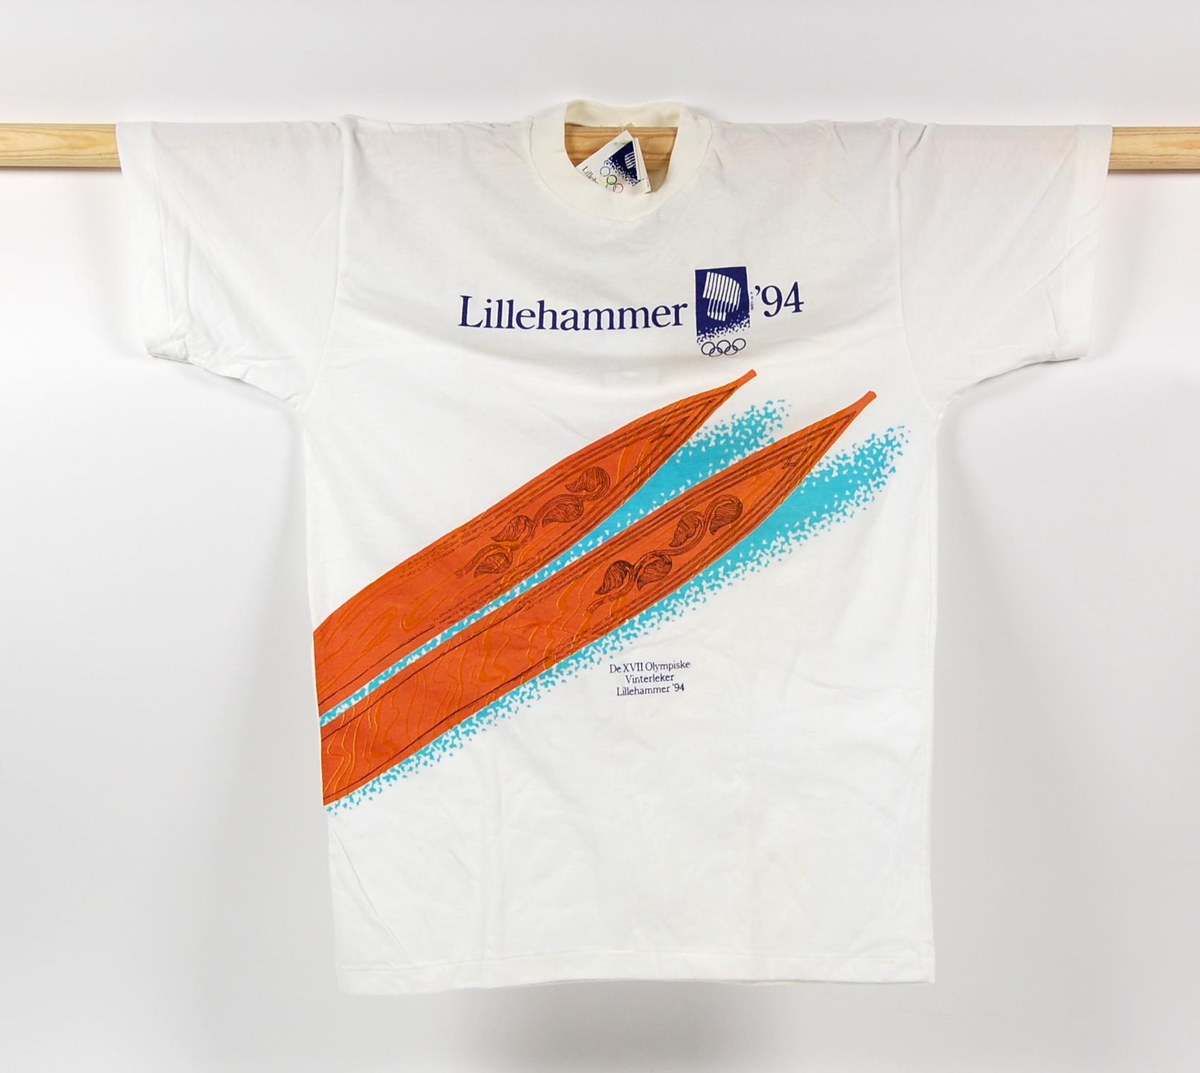 Hvit t-skjorte i størrelse M. Foran på t-skjorten er det en laminert logo for de olympiske vinterleker på Lillehammer i 1994 og et motiv av tuppene på et par treski av gammel modell.